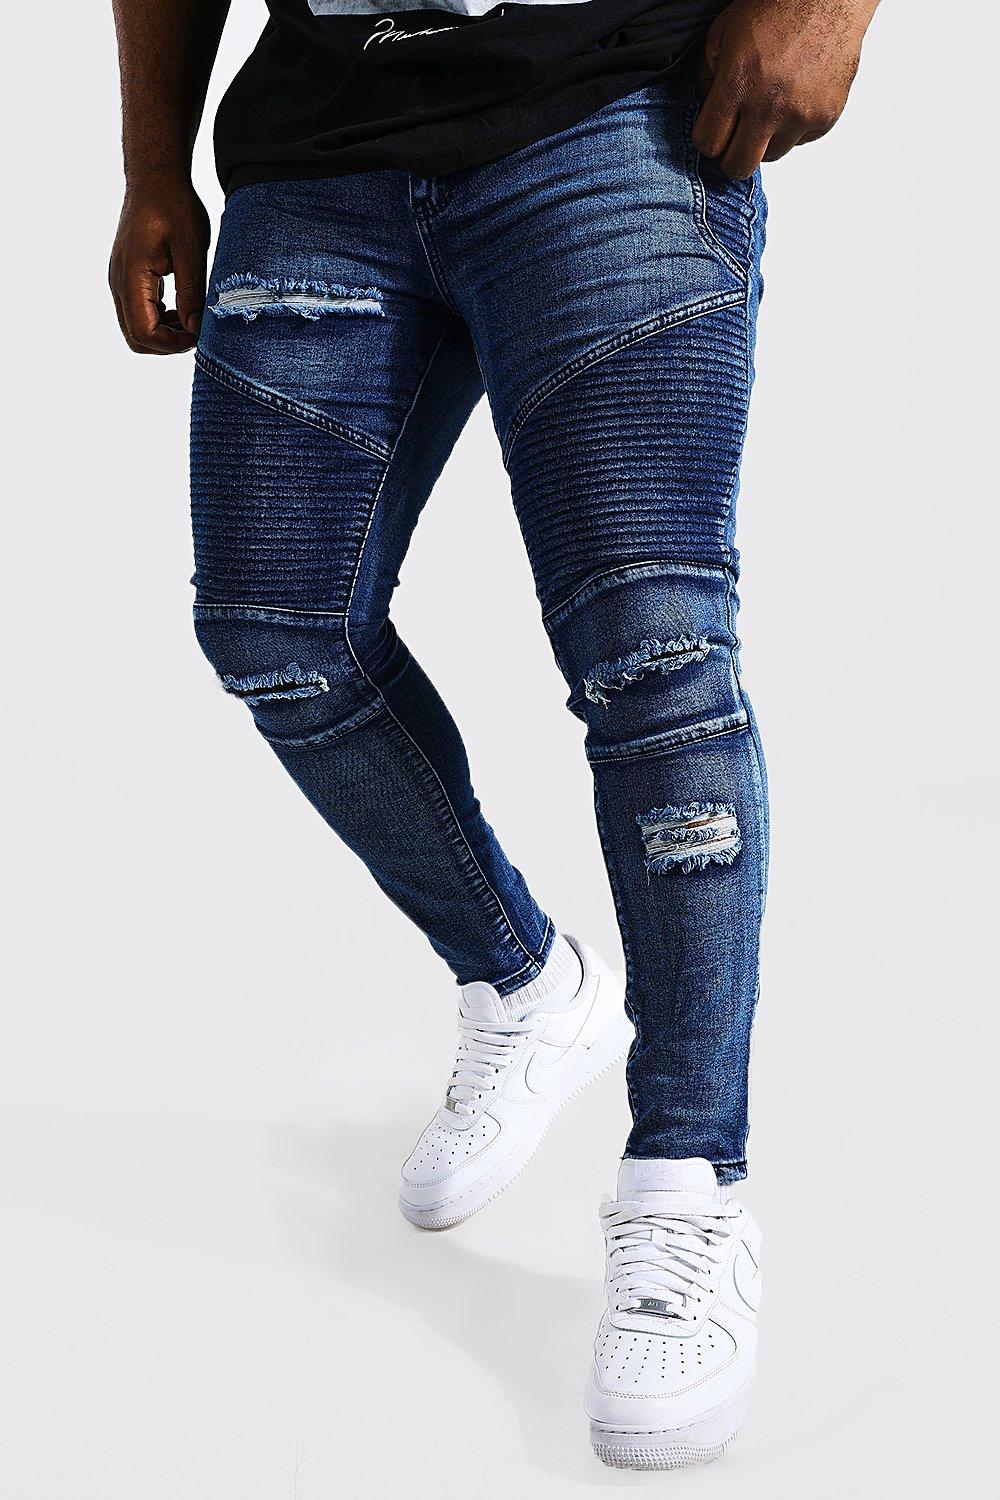 Beugel Eervol stijl Plus Size Blue Skinny Fit Ripped Biker Jeans | boohooMAN USA